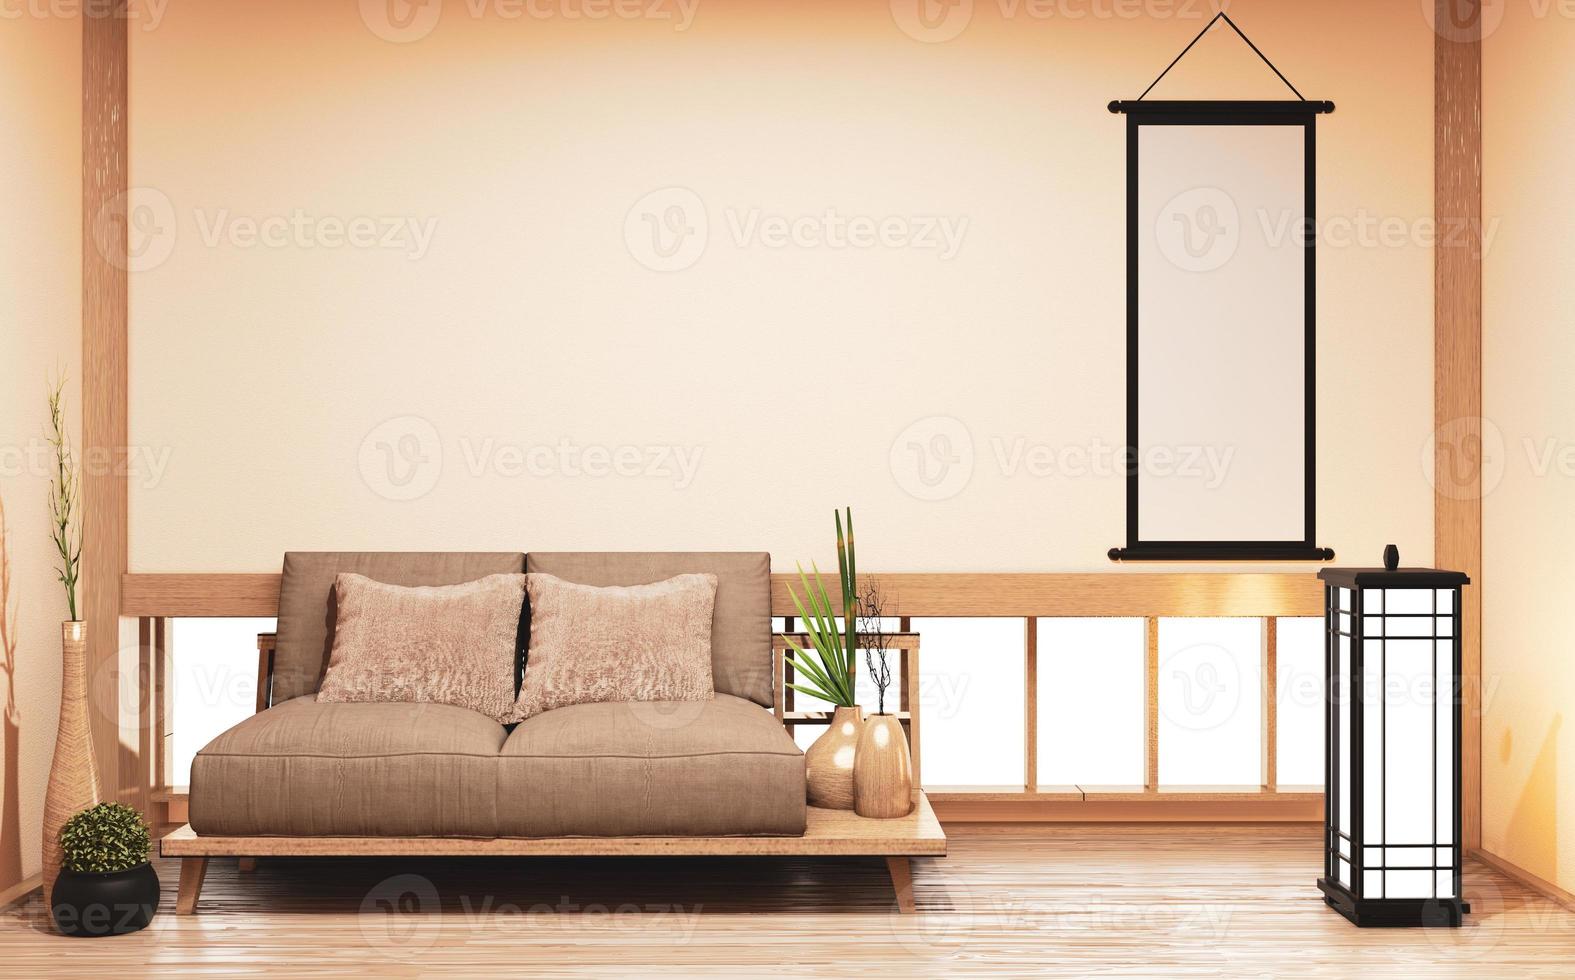 divano in legno design giapponese, pavimento in legno giapponese in camera e lampada decorativa e vaso per piante.3d rendering foto